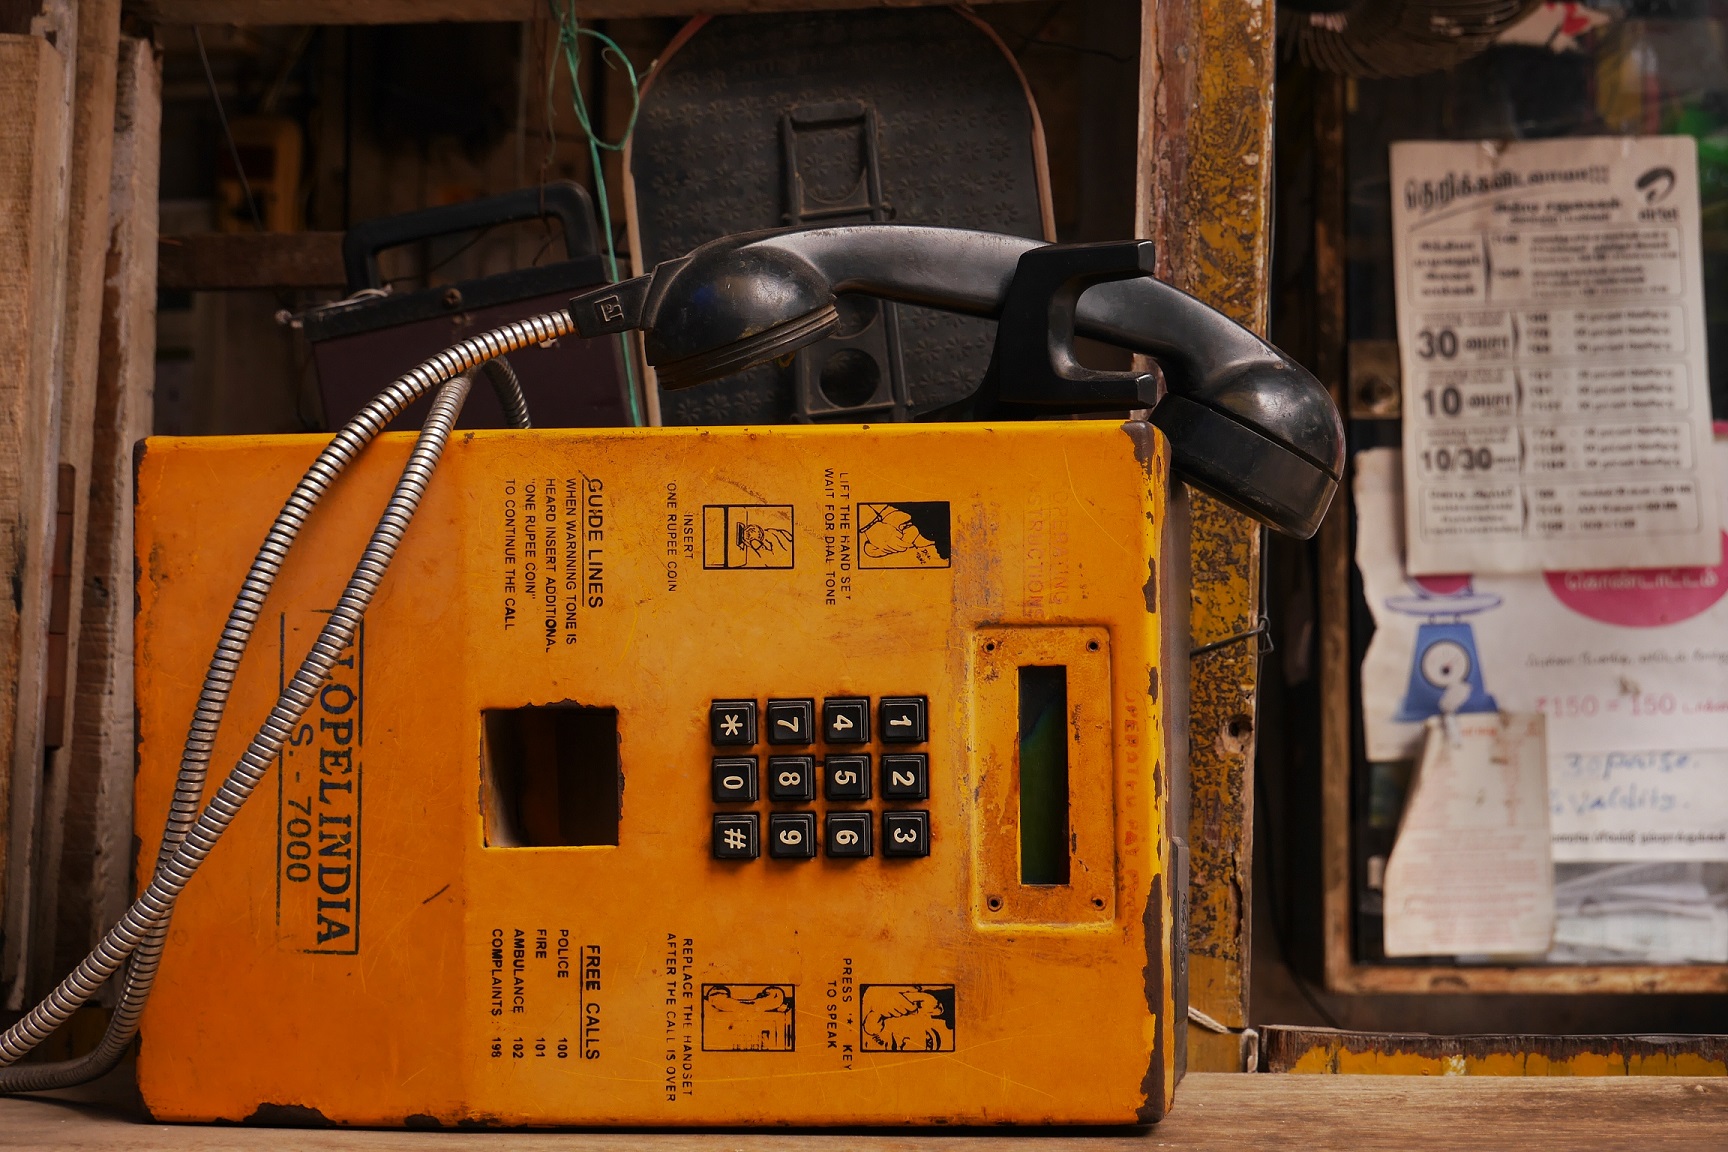 Un vecchio telefono, esempio di tecnologia obsoleta. Non è meglio il social selling?